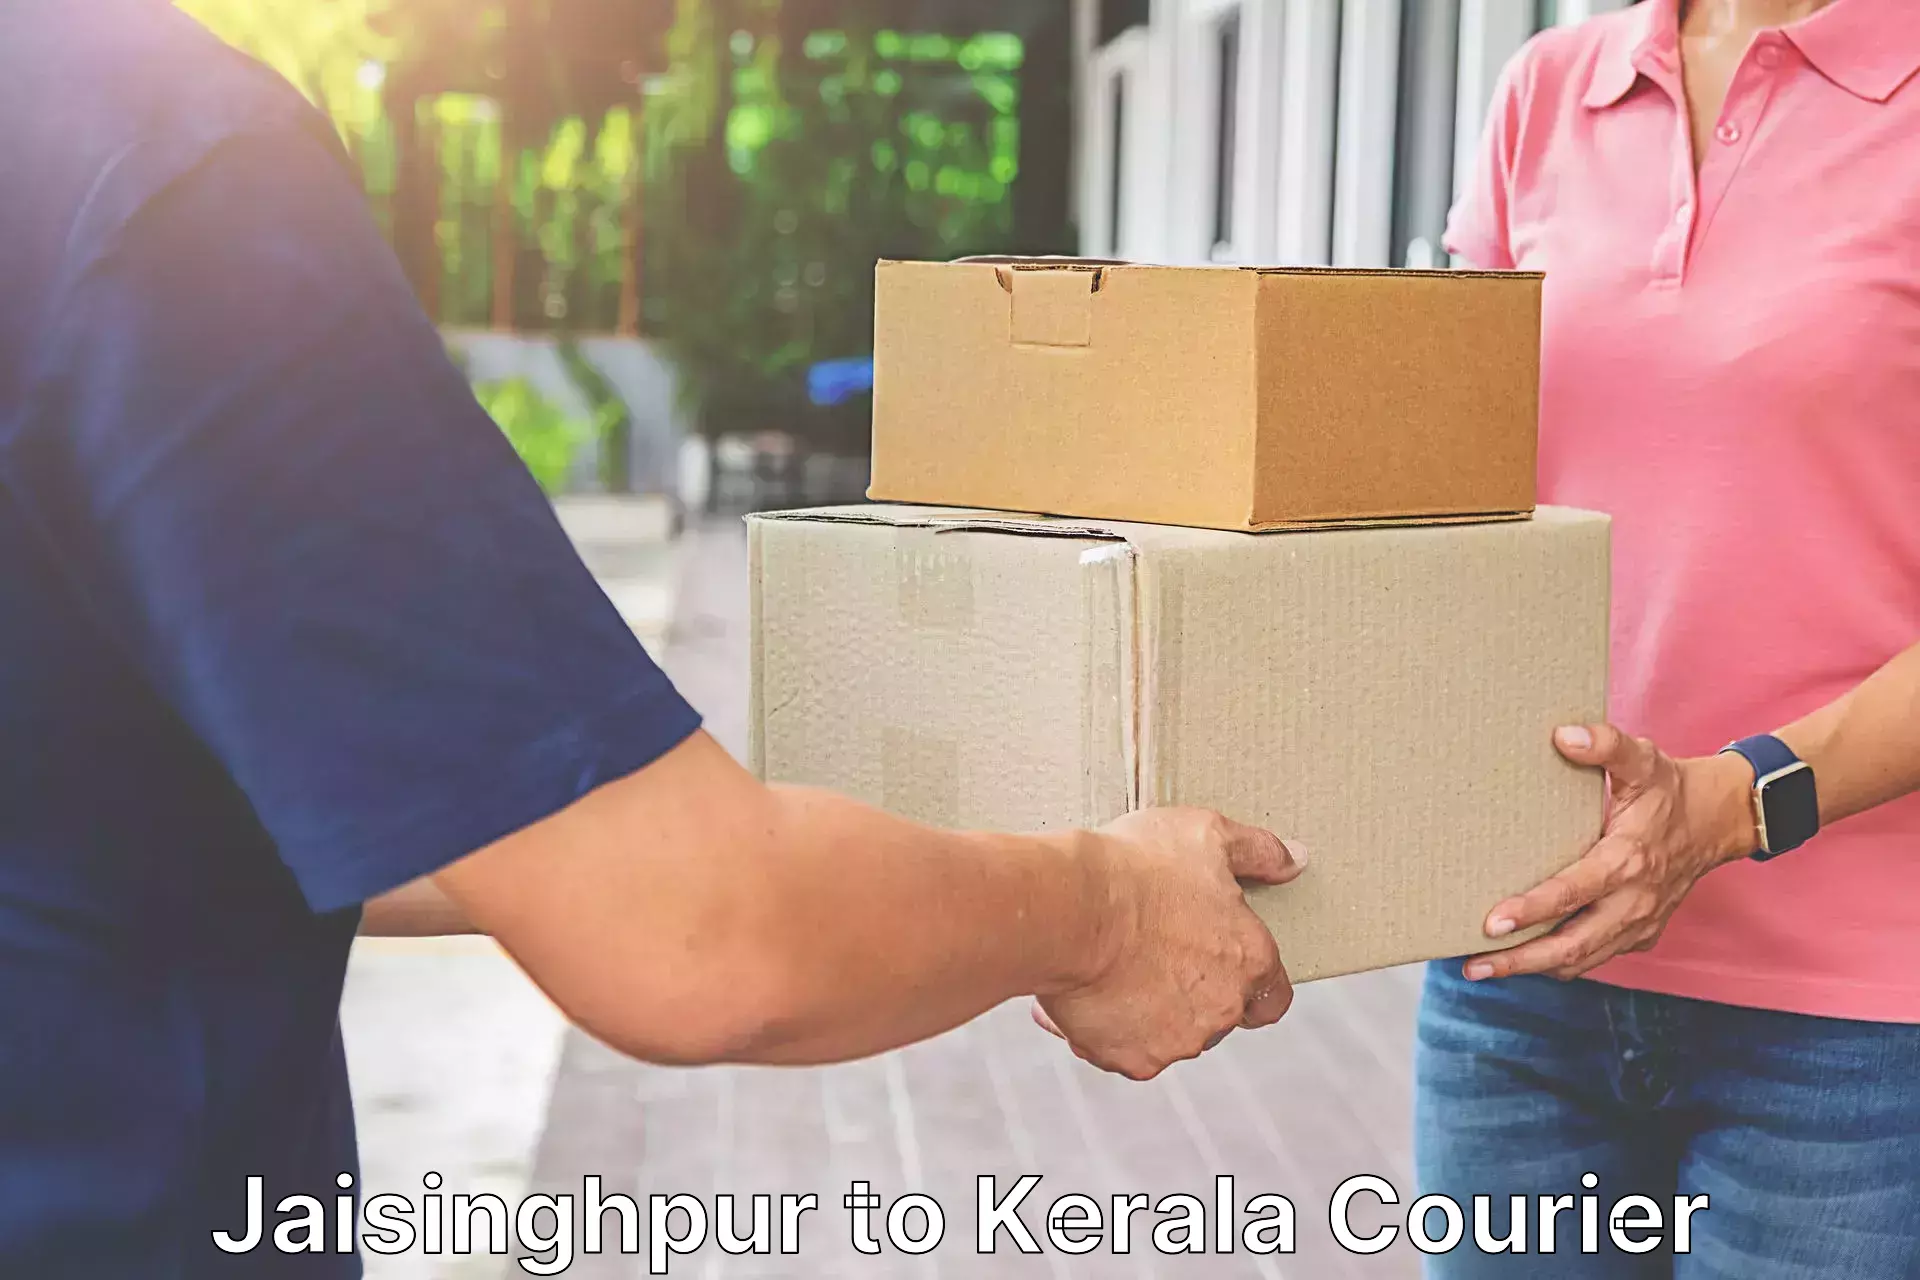 Courier services in Jaisinghpur to Kannur